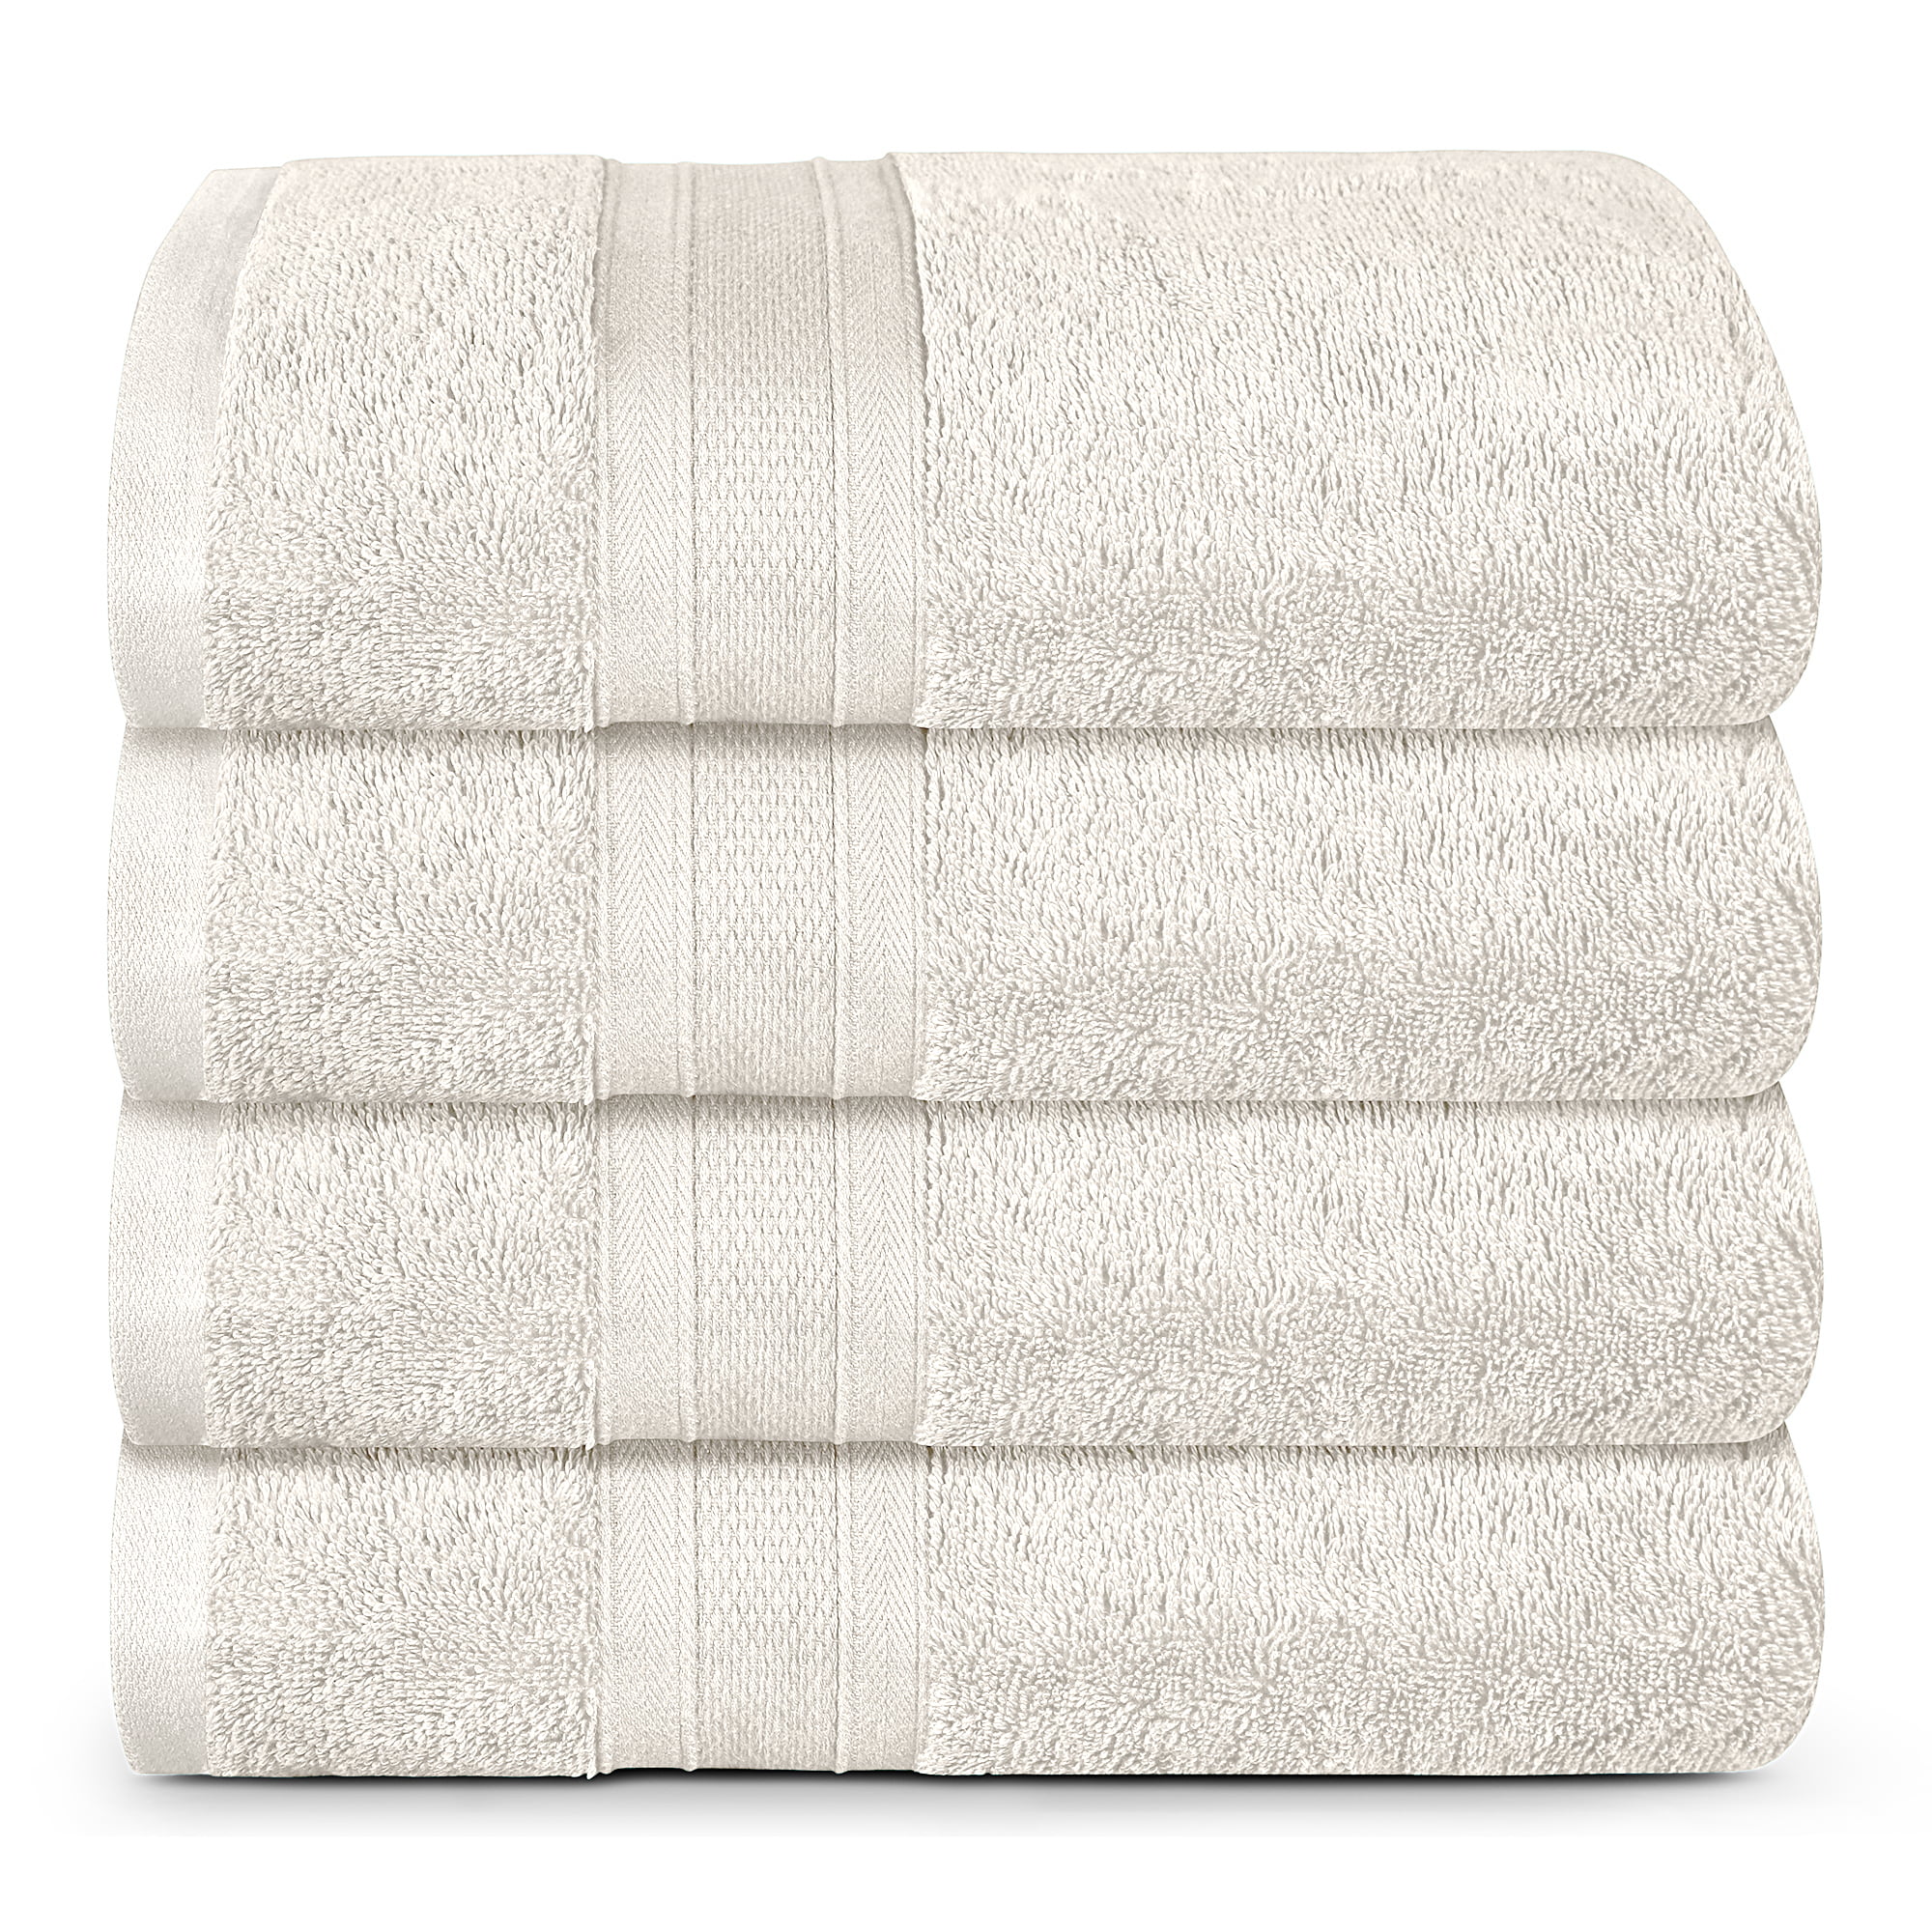 Details about   Textured Bath Towel Set 6 pc White Borders Plush Combed Cotton Towels 3 Colors 